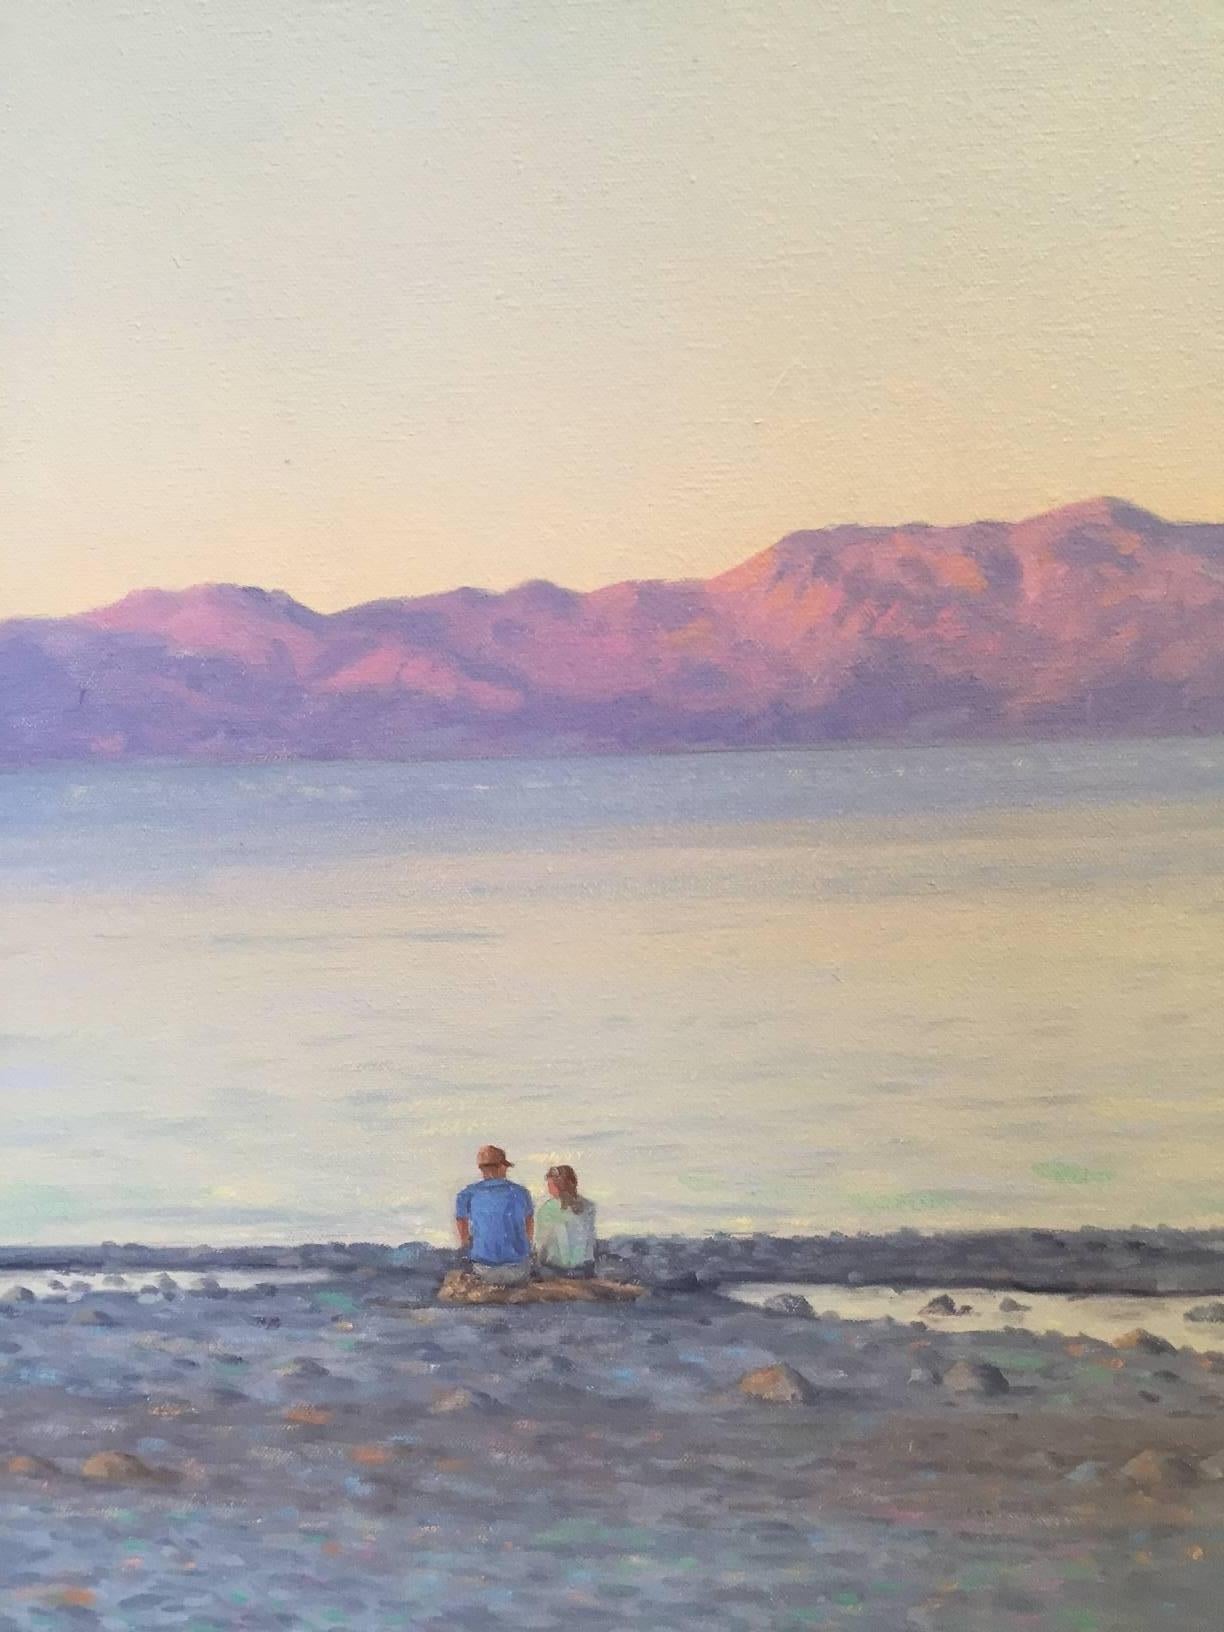 Amis et famille profitant du soleil couchant au lac Tahoe avec la lumière du début de soirée et la majestueuse crête des montagnes alpines au loin.  Willard Dixon est l'un des meilleurs peintres réalistes contemporains américains vivant aujourd'hui.